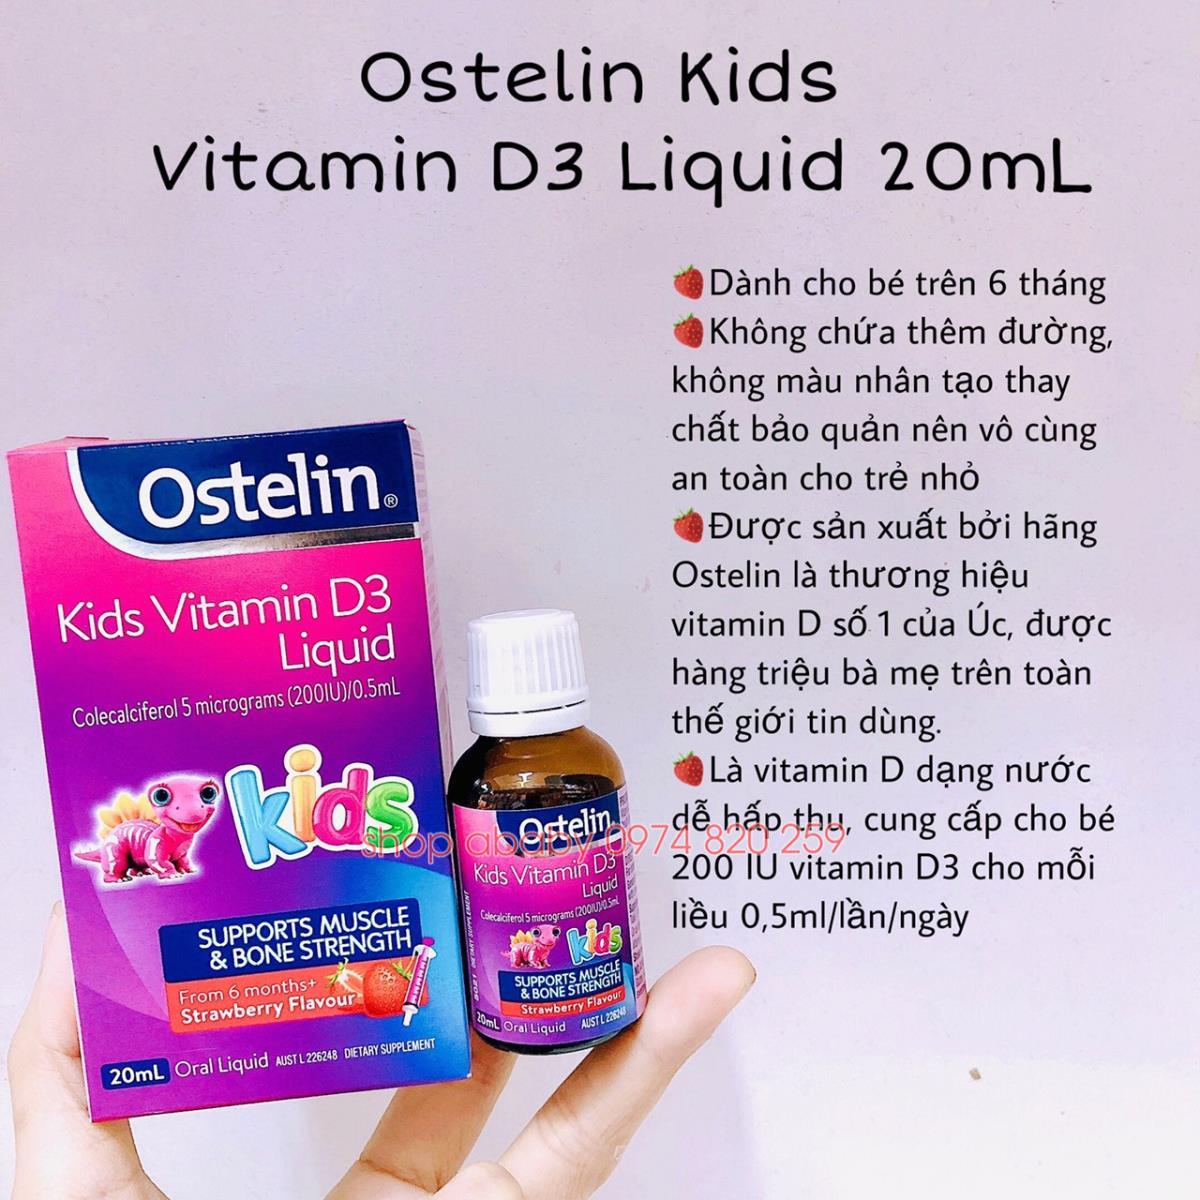 Cách sử dụng và liều lượng vitamin D3 liquid như thế nào?
